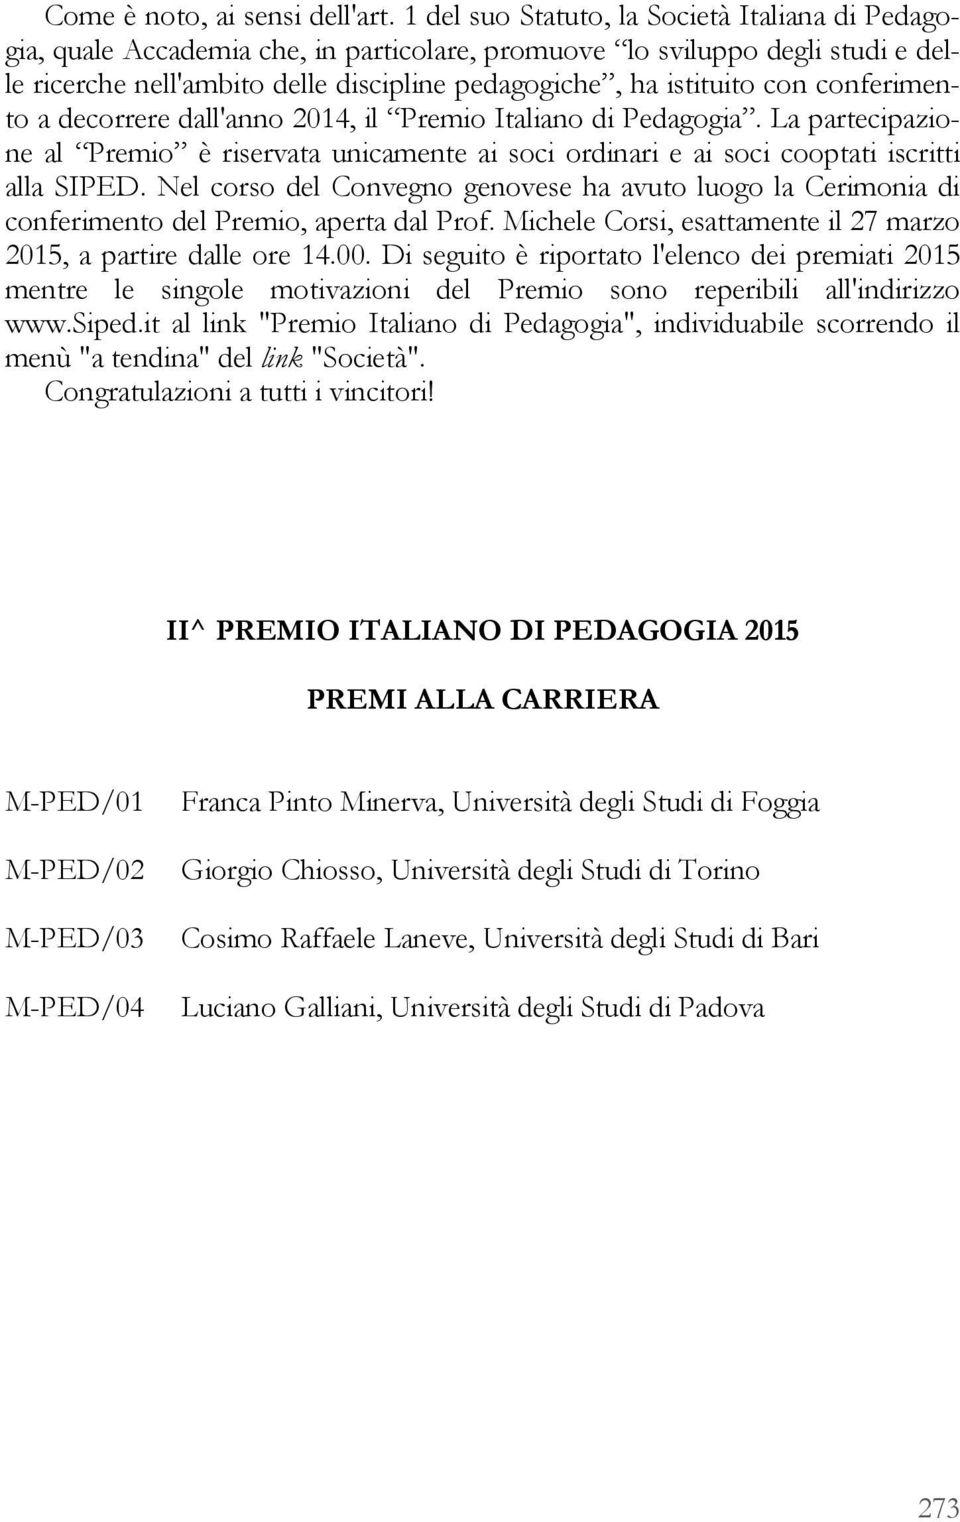 conferimento a decorrere dall'anno 2014, il Premio Italiano di Pedagogia. La partecipazione al Premio è riservata unicamente ai soci ordinari e ai soci cooptati iscritti alla SIPED.